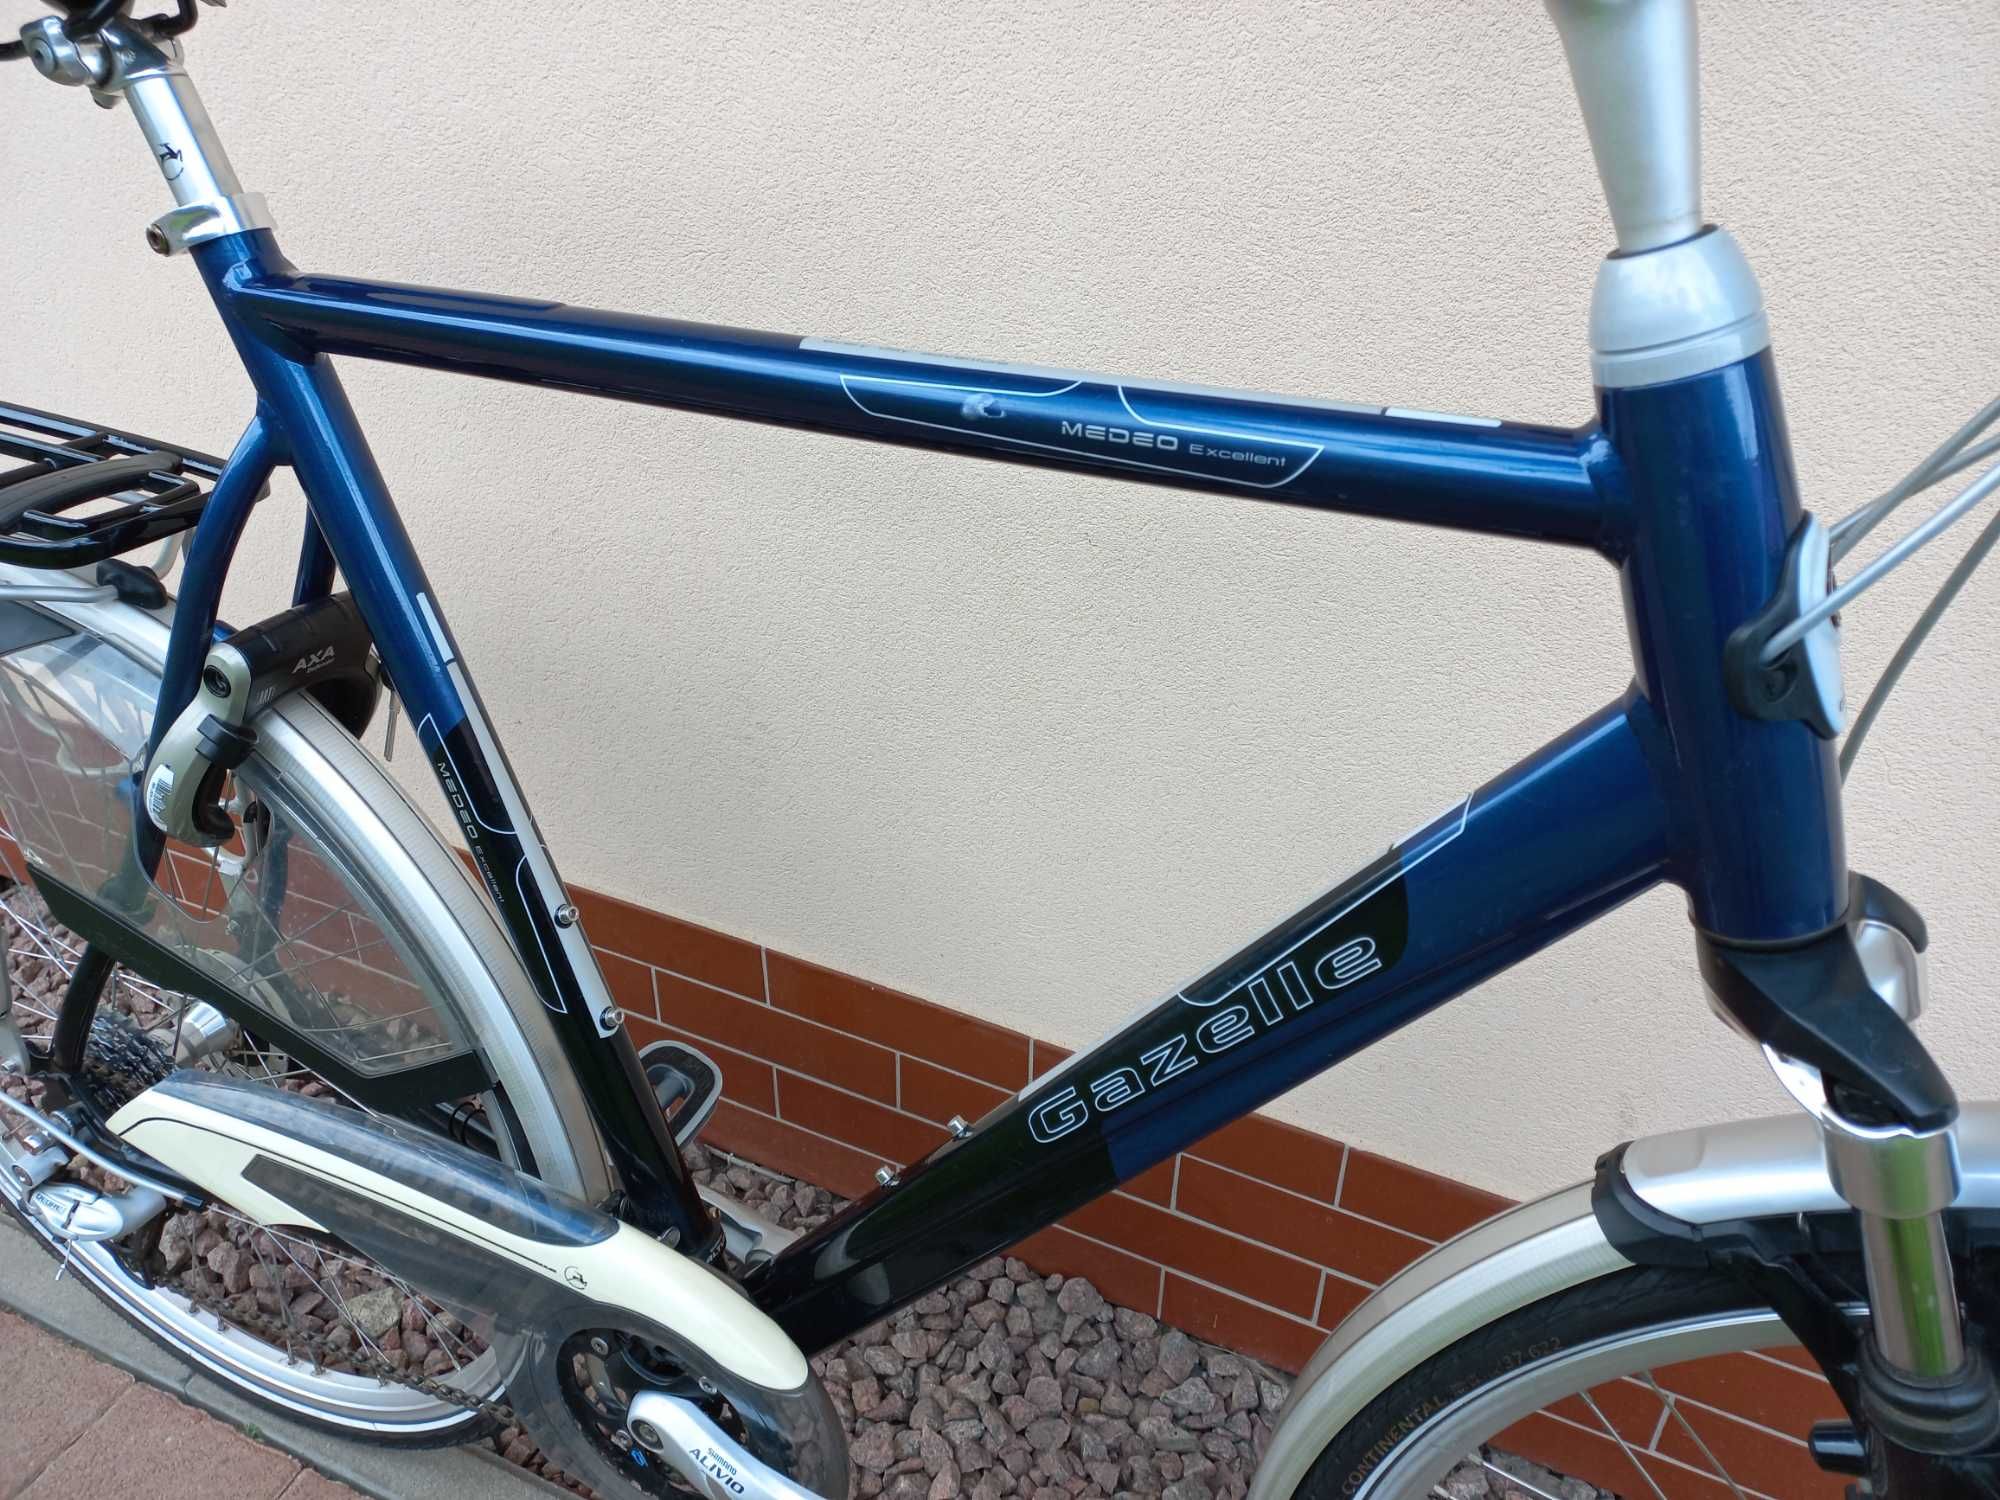 Duży rower męski Gazelle Medeo Excellent 65cm * Deore * amor * !!!